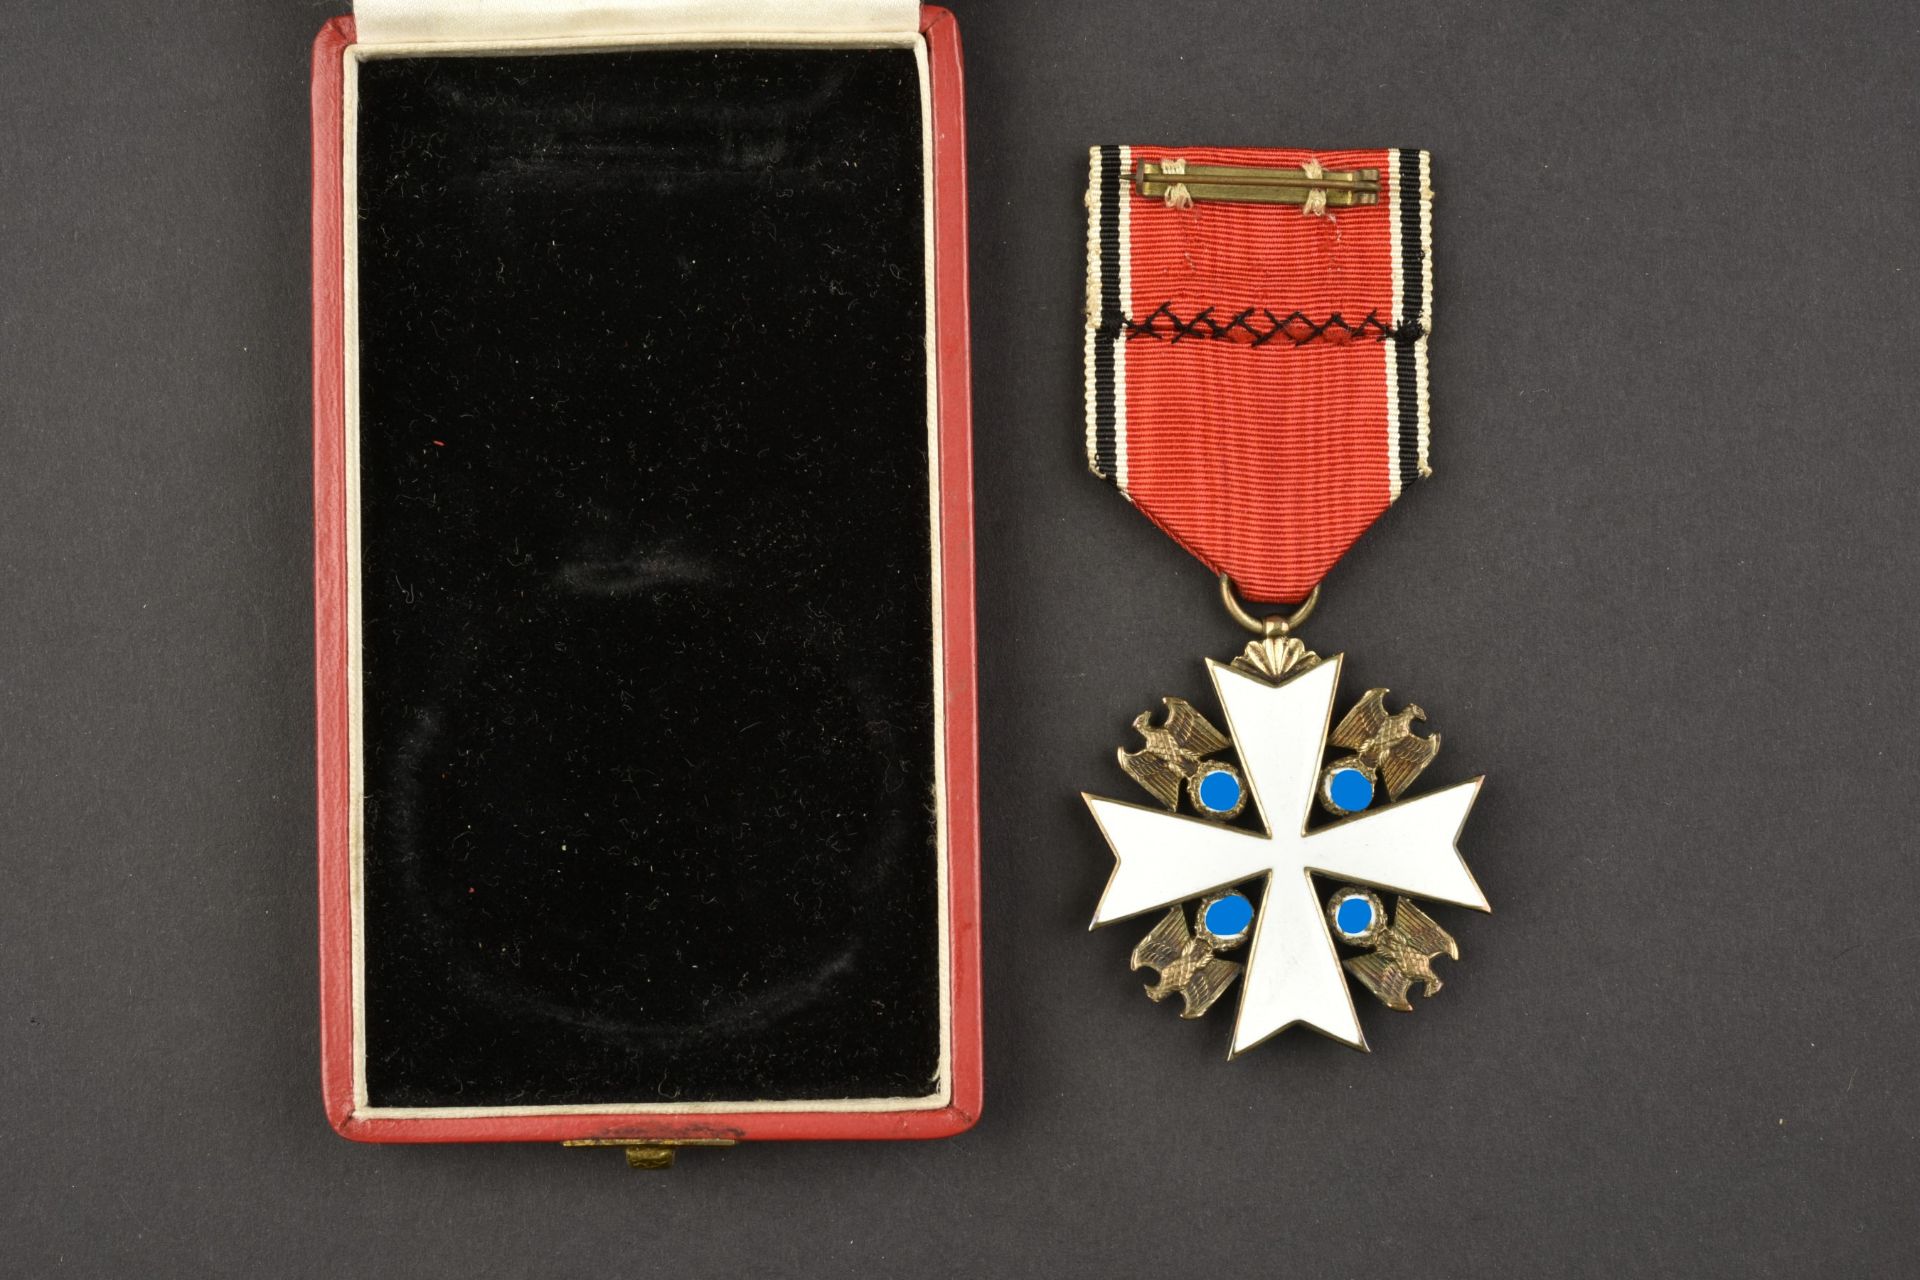 Medaille Deutsche Adler. Deutsche Adler medals. - Image 4 of 8